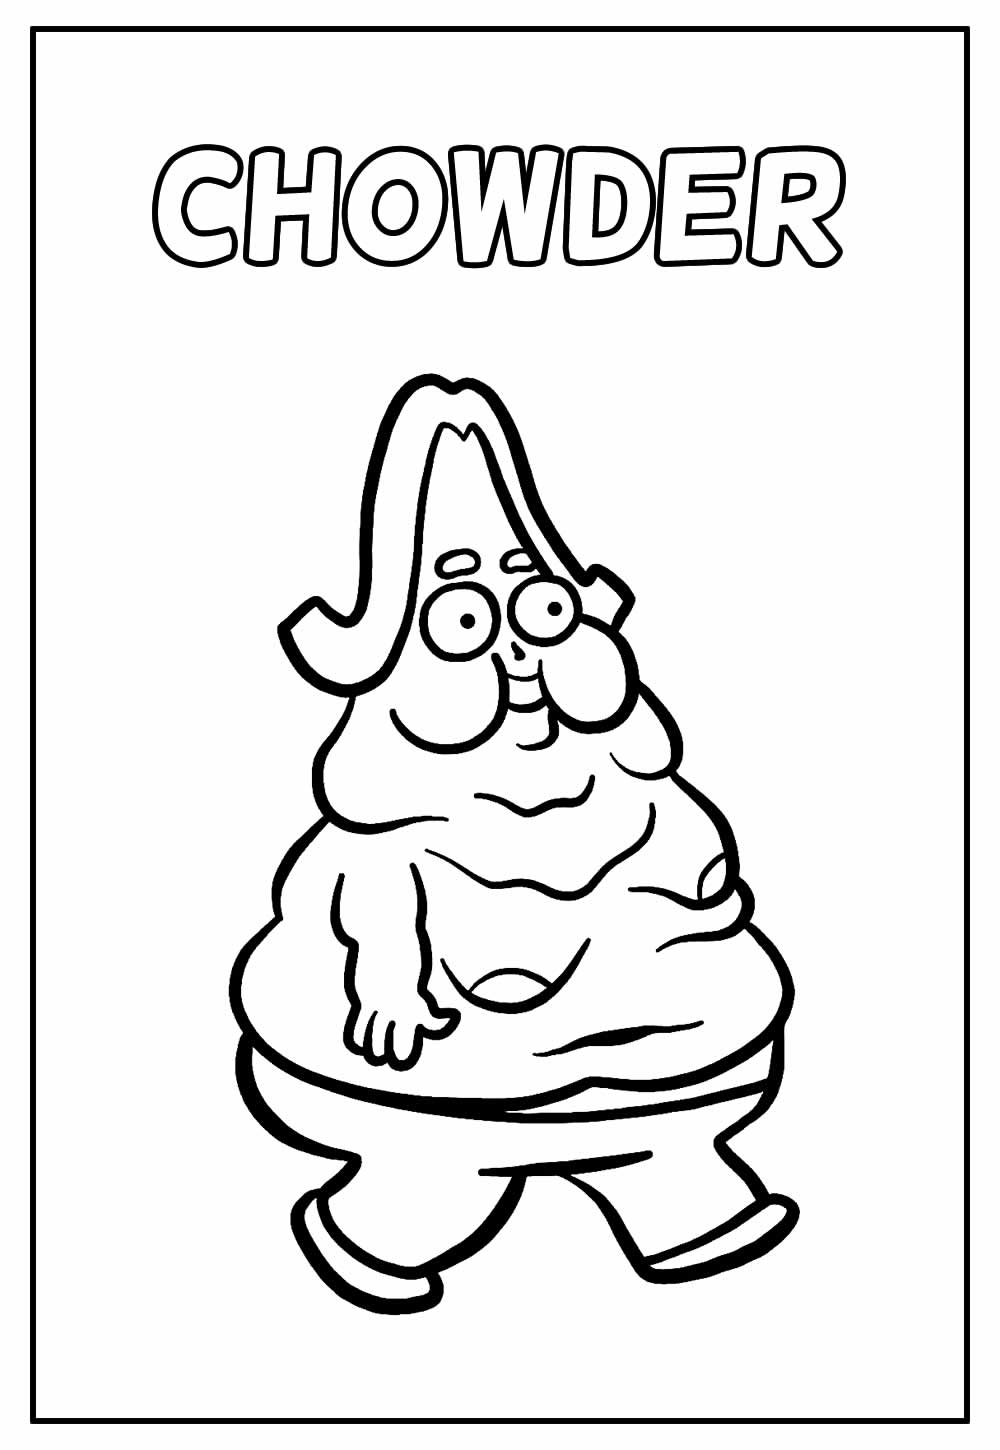 Desenho Educativo do Chowder para pintar